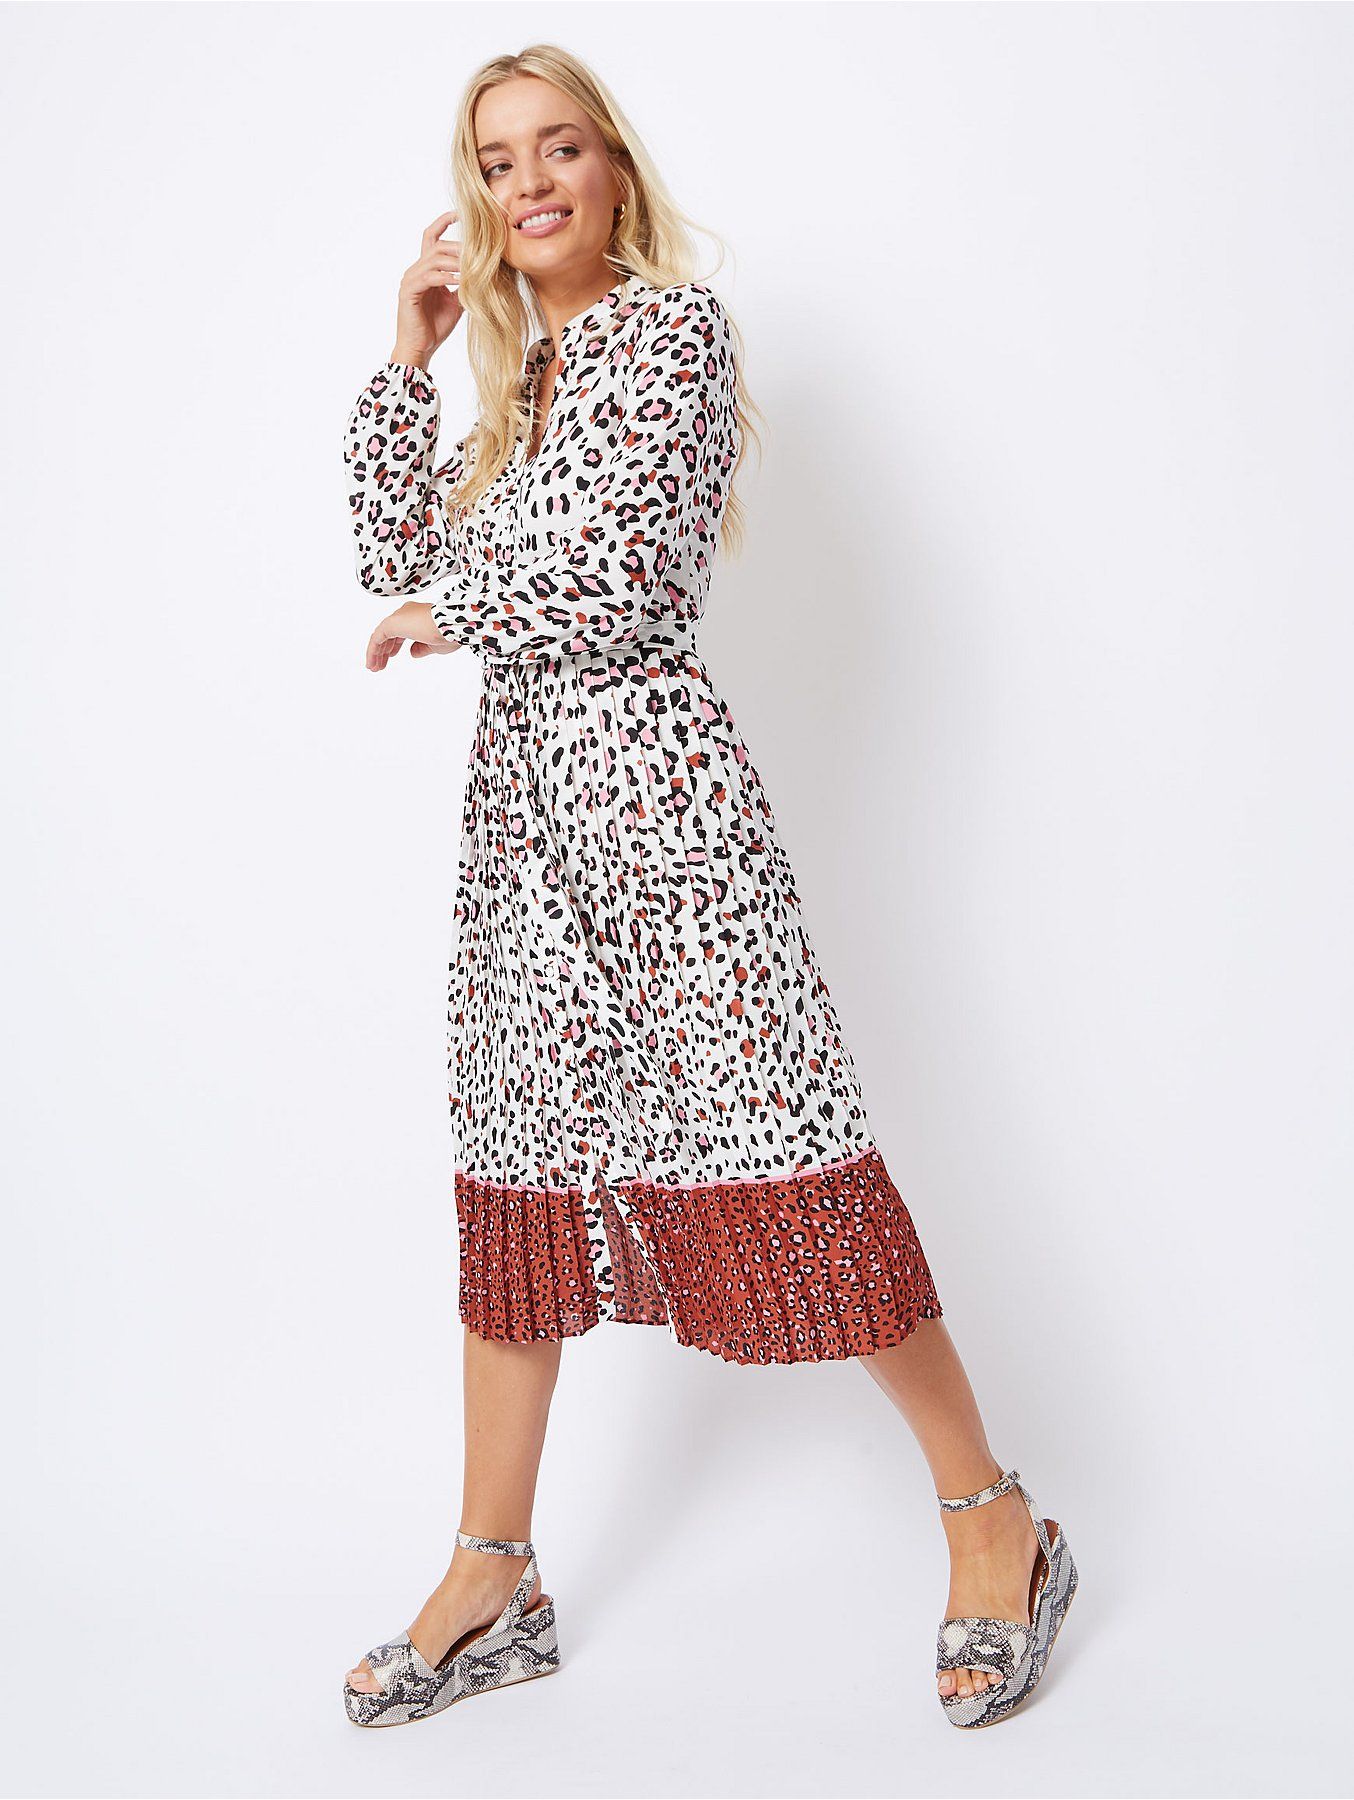 asda leopard print dress